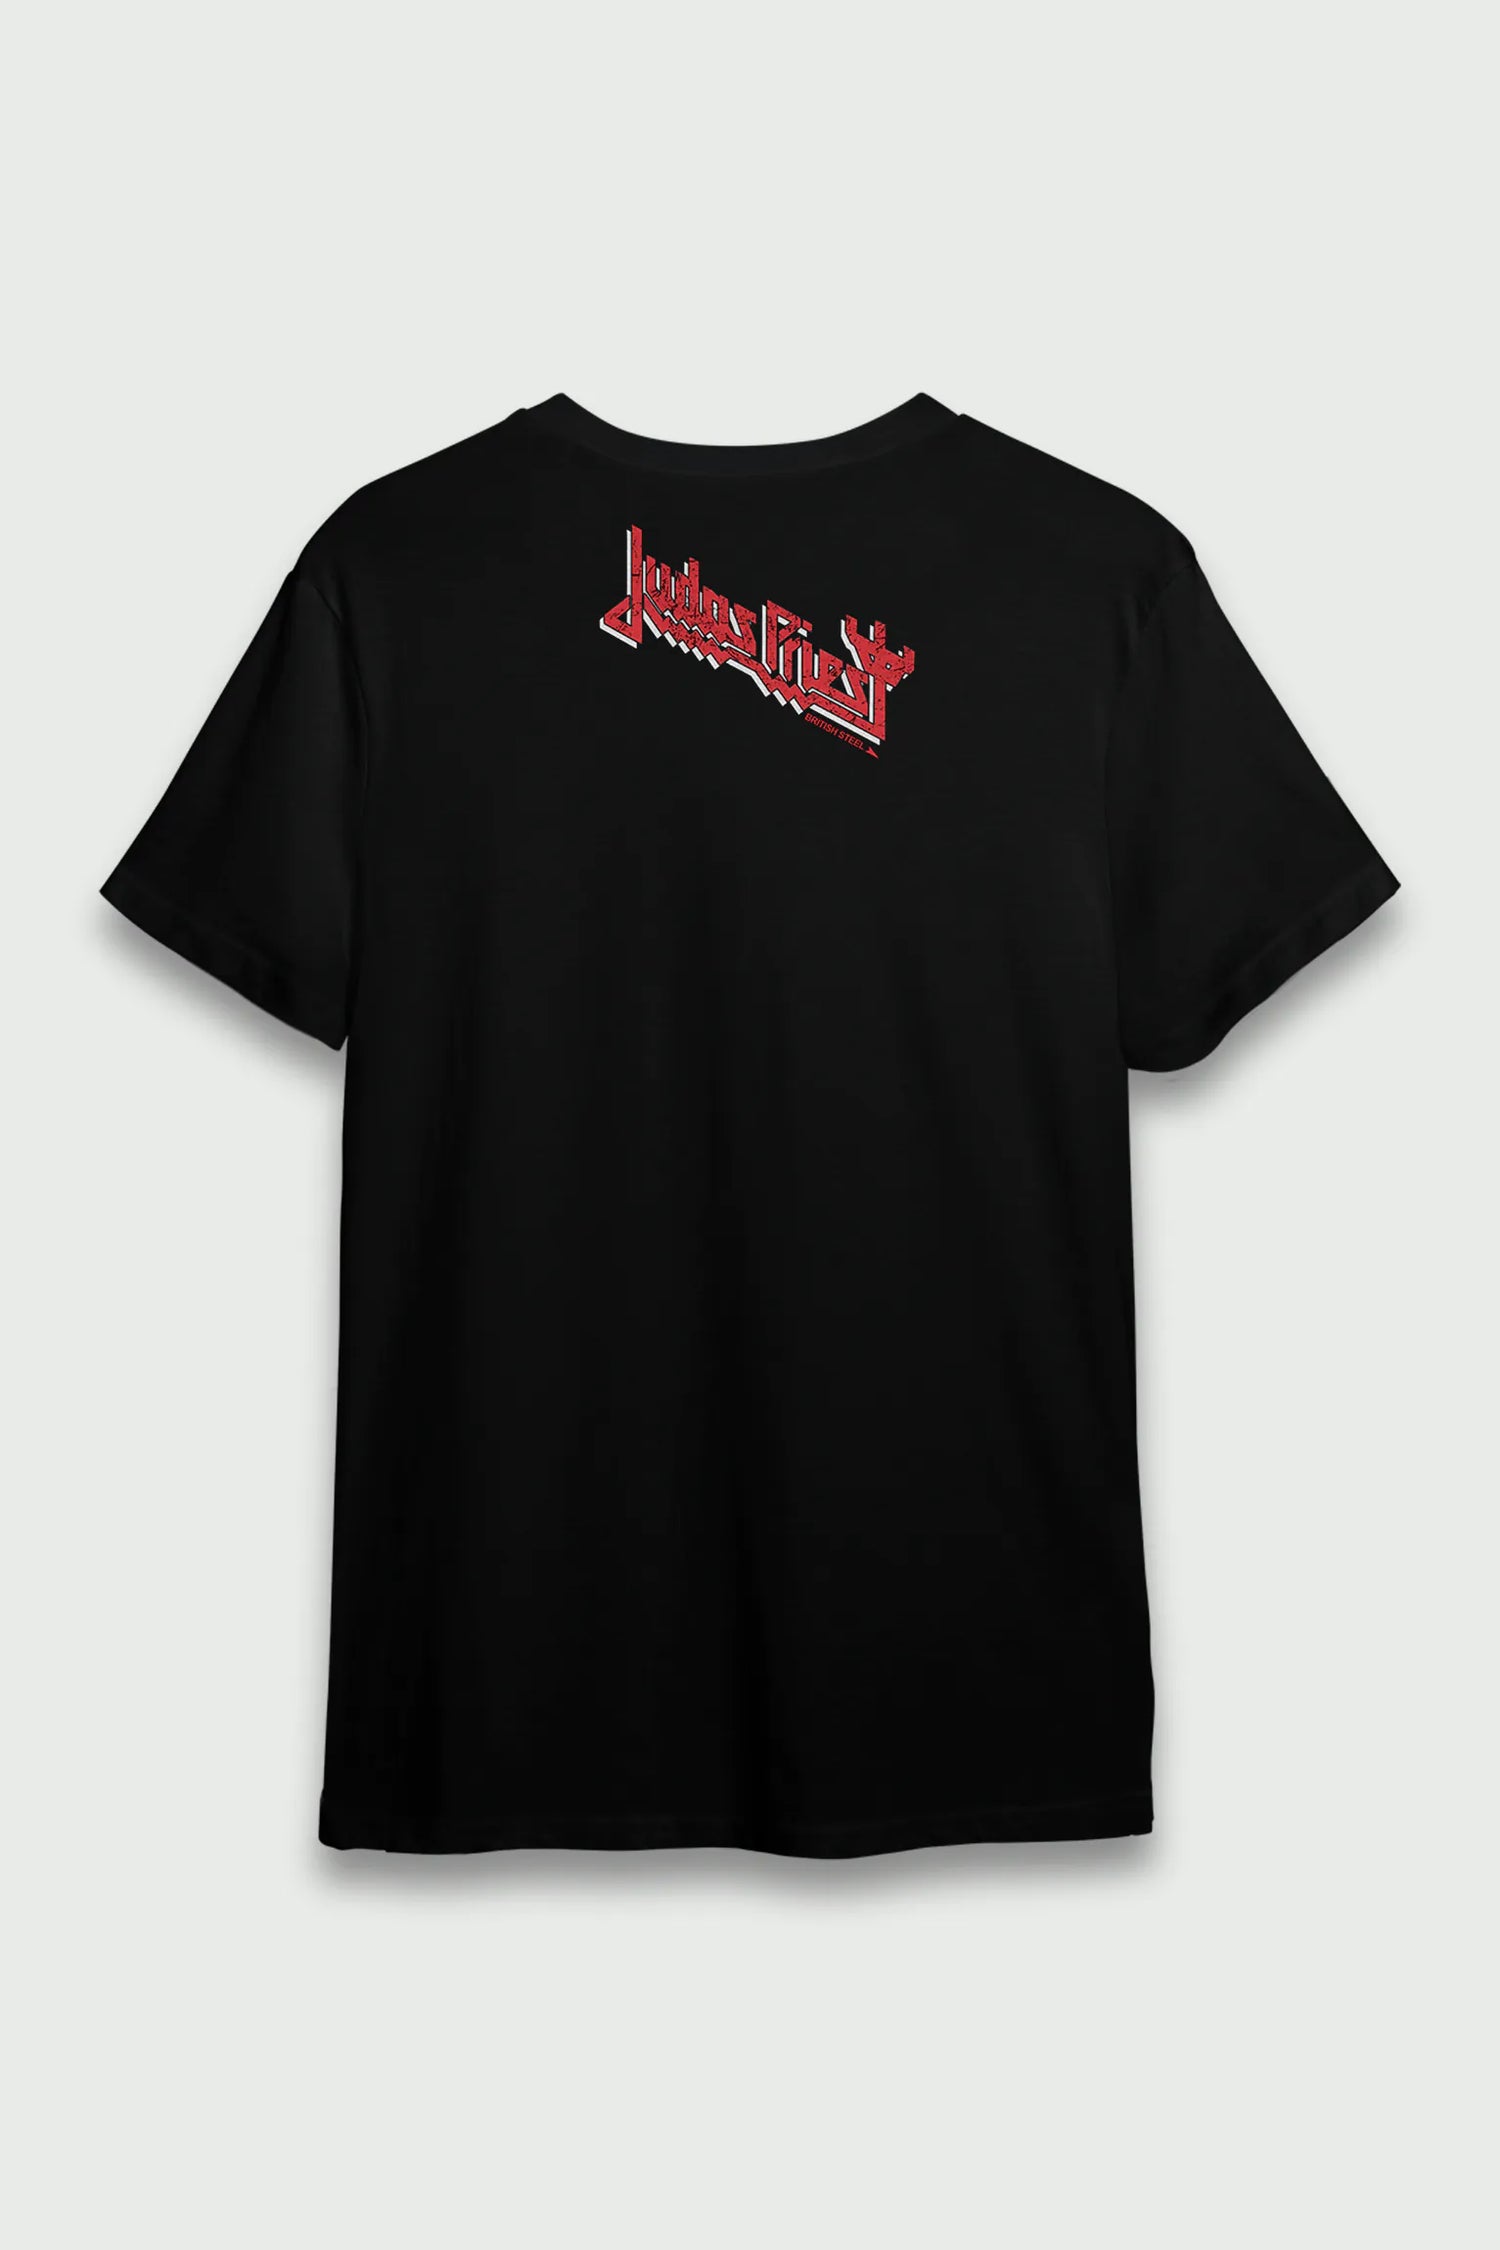 Camiseta Judas Priest British Steel 1